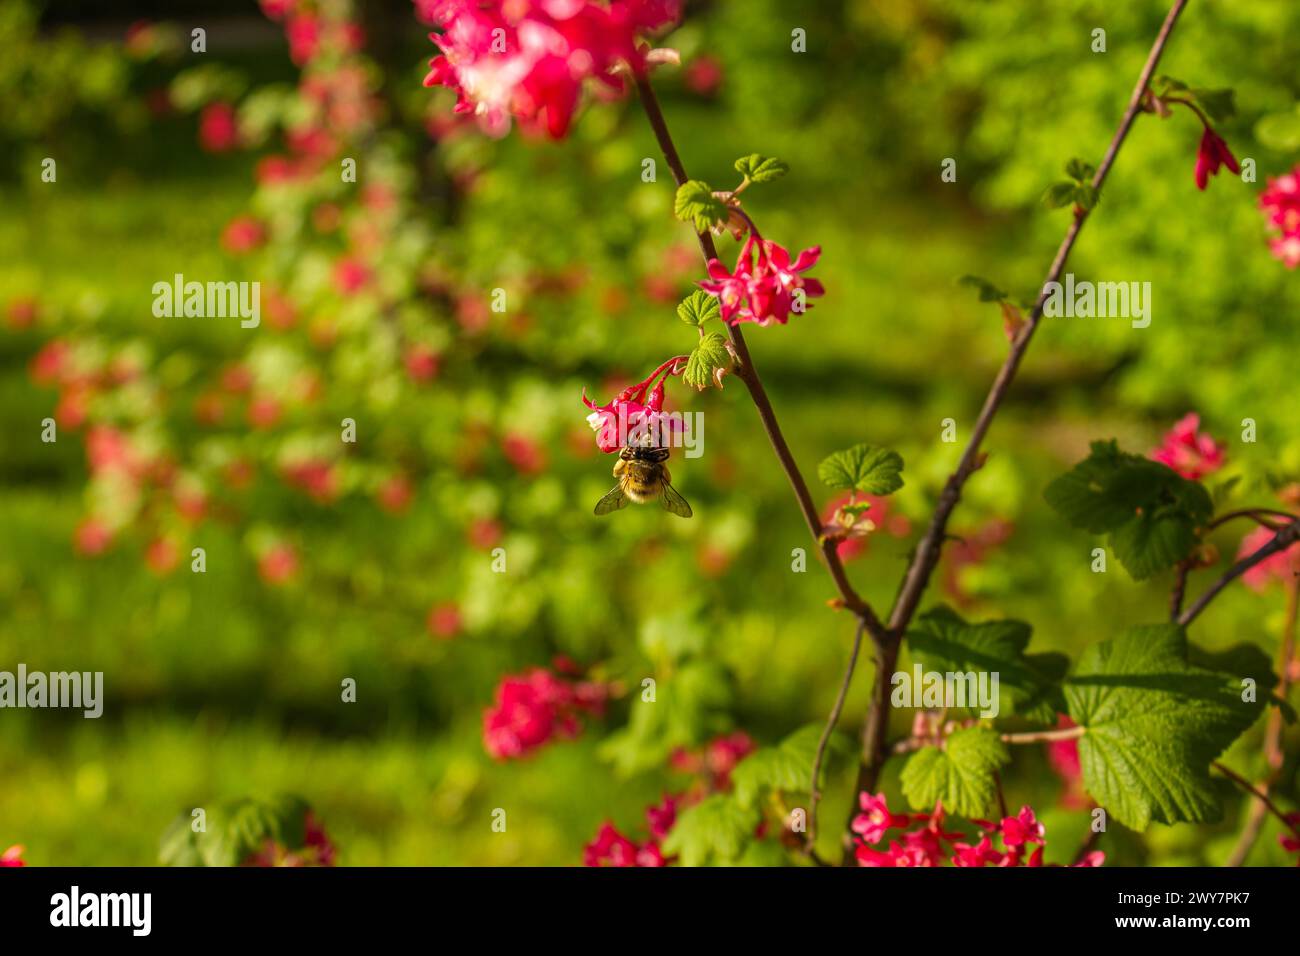 Fiori di ribes rosso con api impollinanti durante le sorgenti. Fiori di ribes rosa in fiore in primavera. Foto Stock